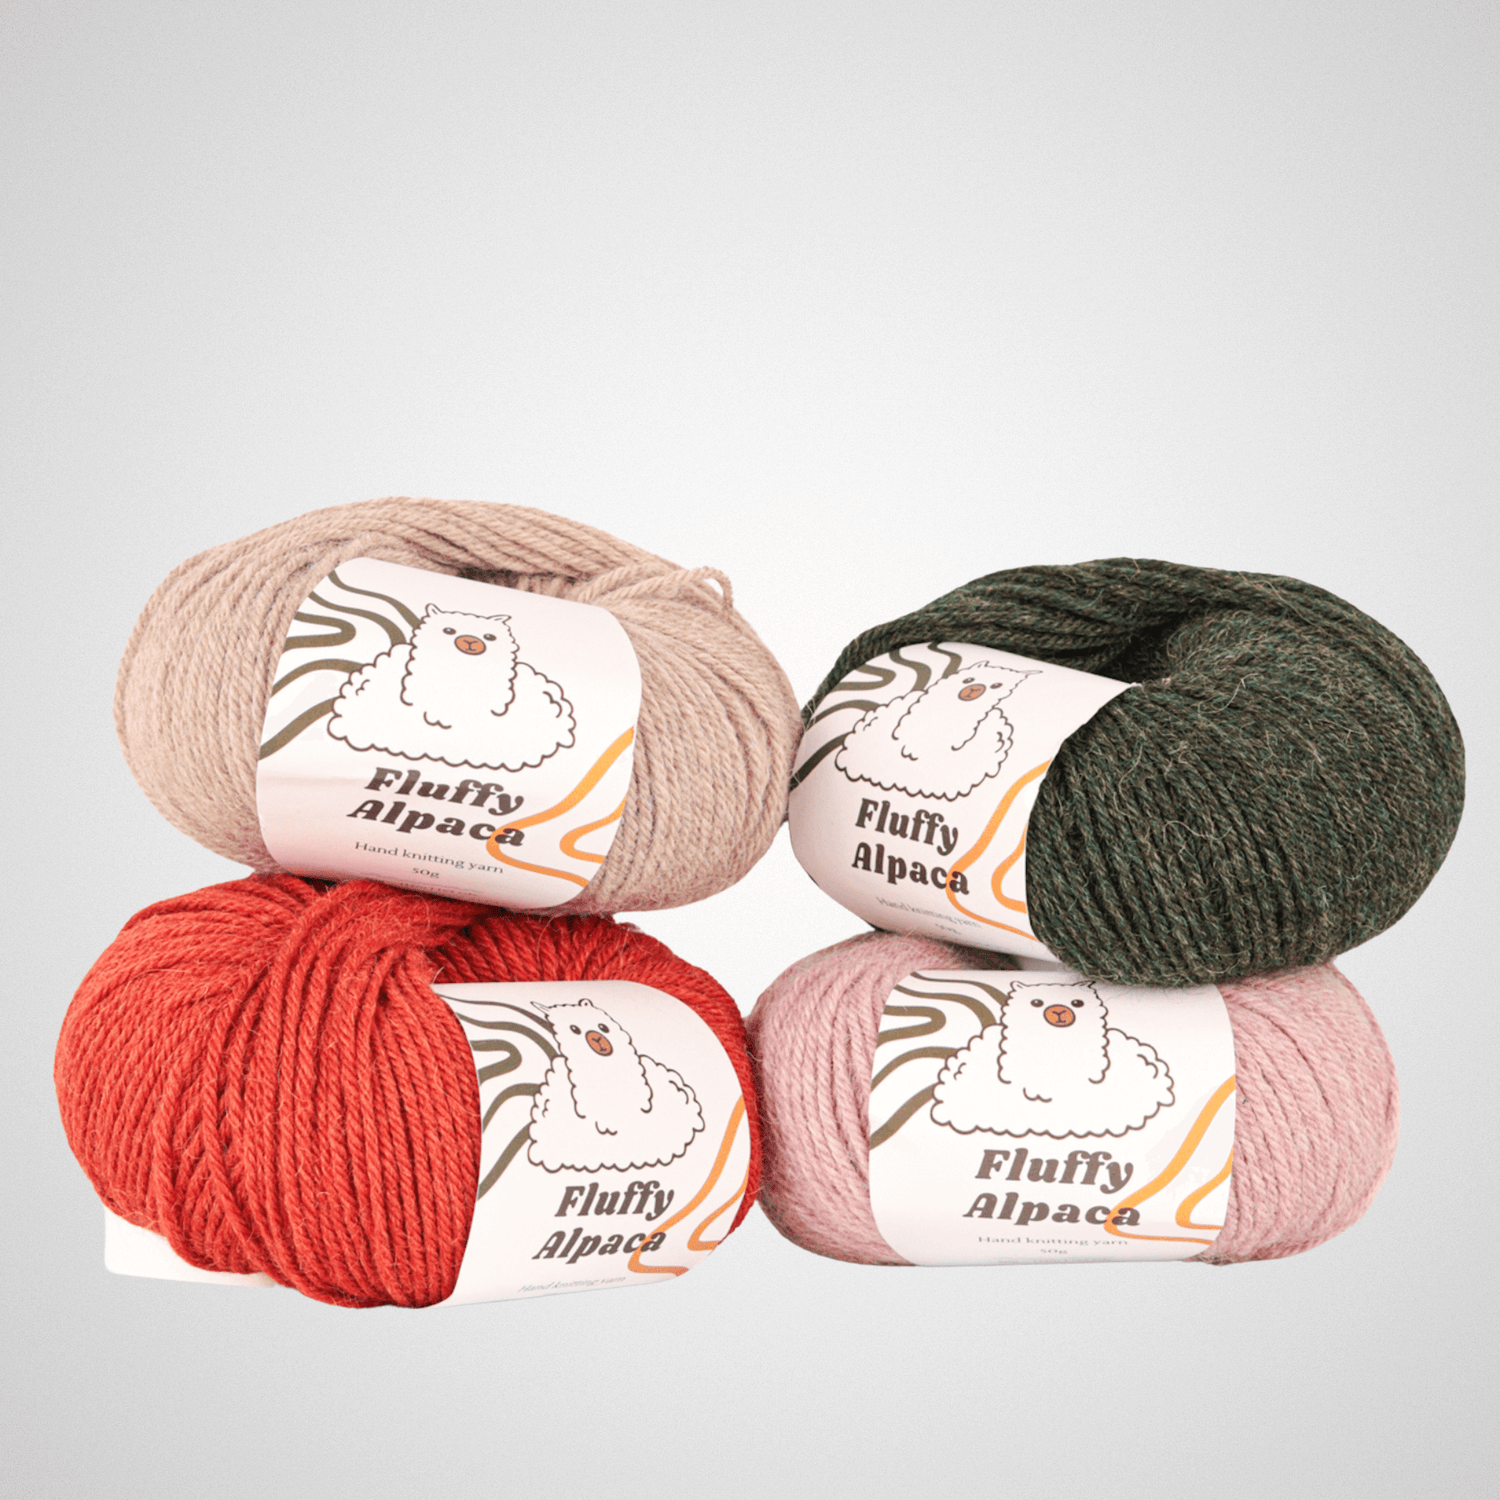 Fluffy Alpaca - Knitting yarn - 100% alpaca wool - Orange